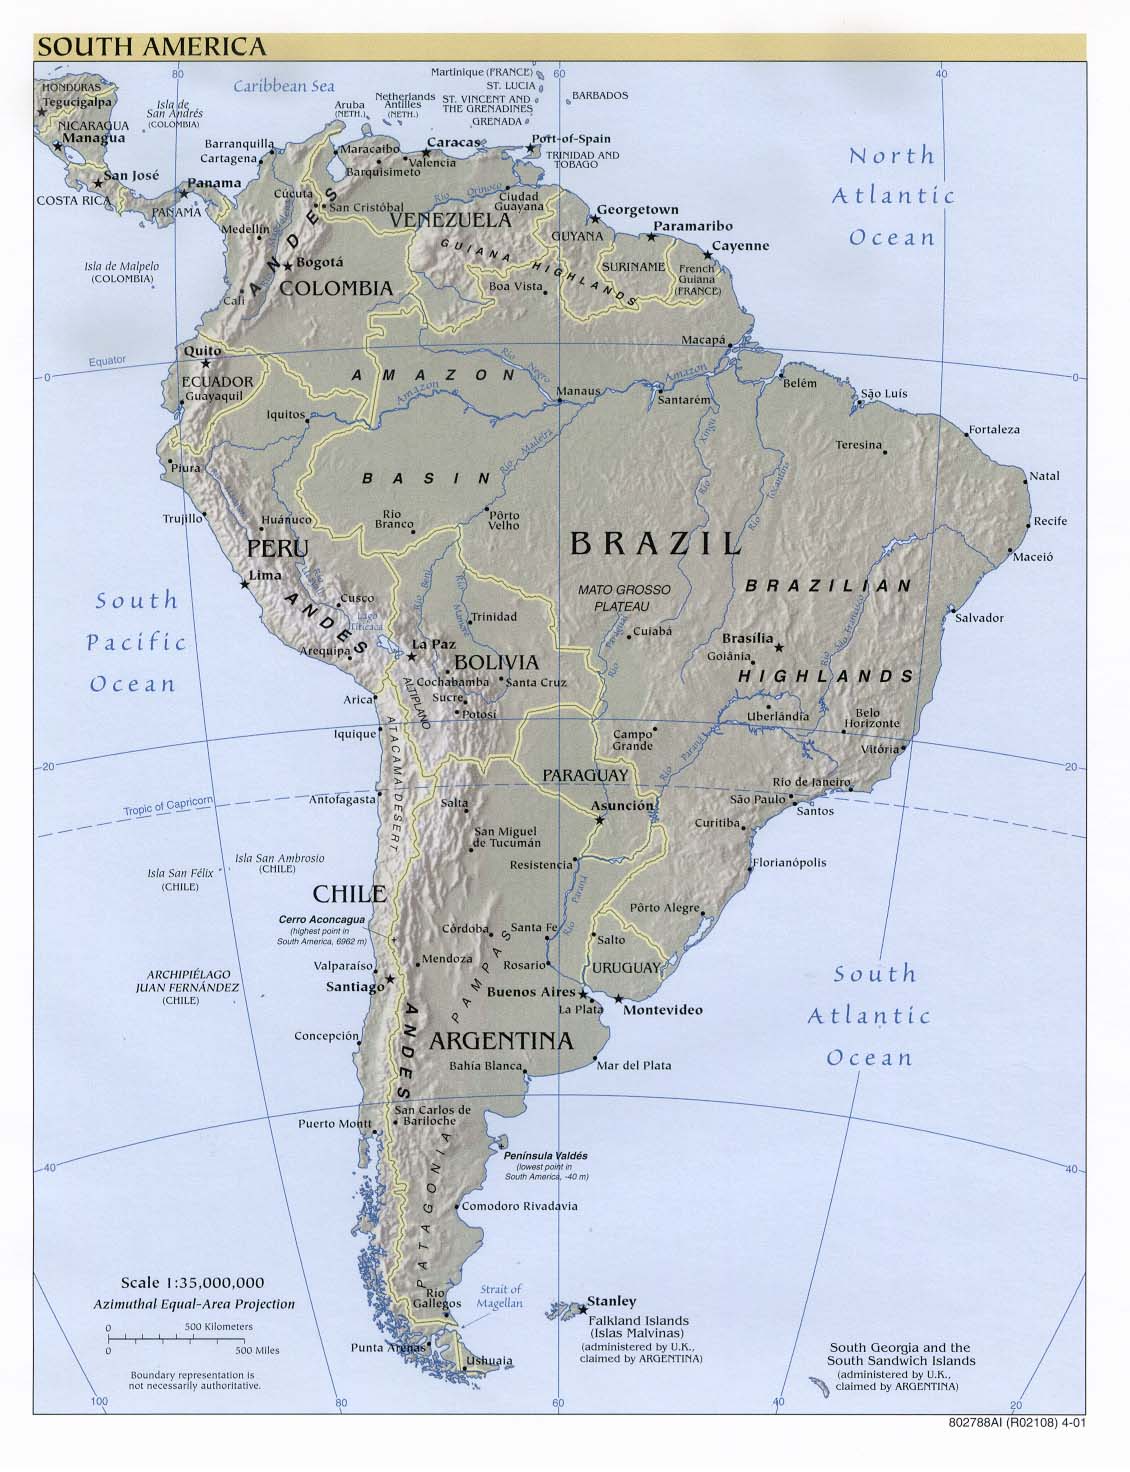 Hier würden Sie die Südamerikakarte sehen.